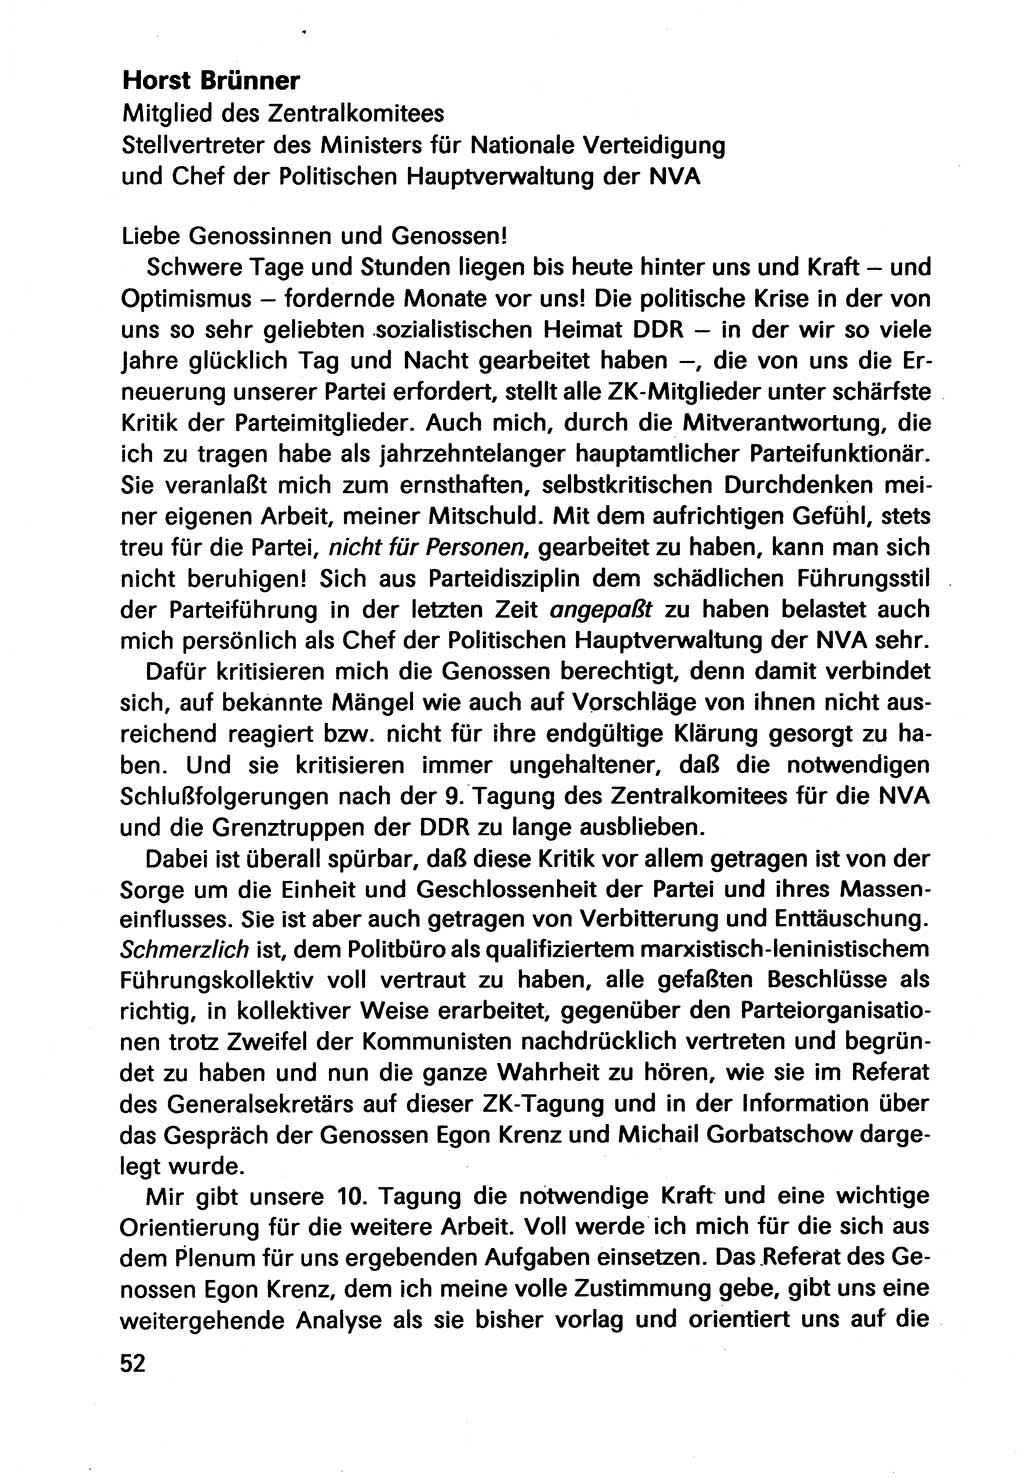 Diskussionsbeiträge, 10. Tagung des ZK (Zentralkomitee) der SED (Sozialistische Einheitspartei Deutschlands) [Deutsche Demokratische Republik (DDR)] 1989, Seite 52 (Disk.-Beitr. 10. Tg. ZK SED DDR 1989, S. 52)